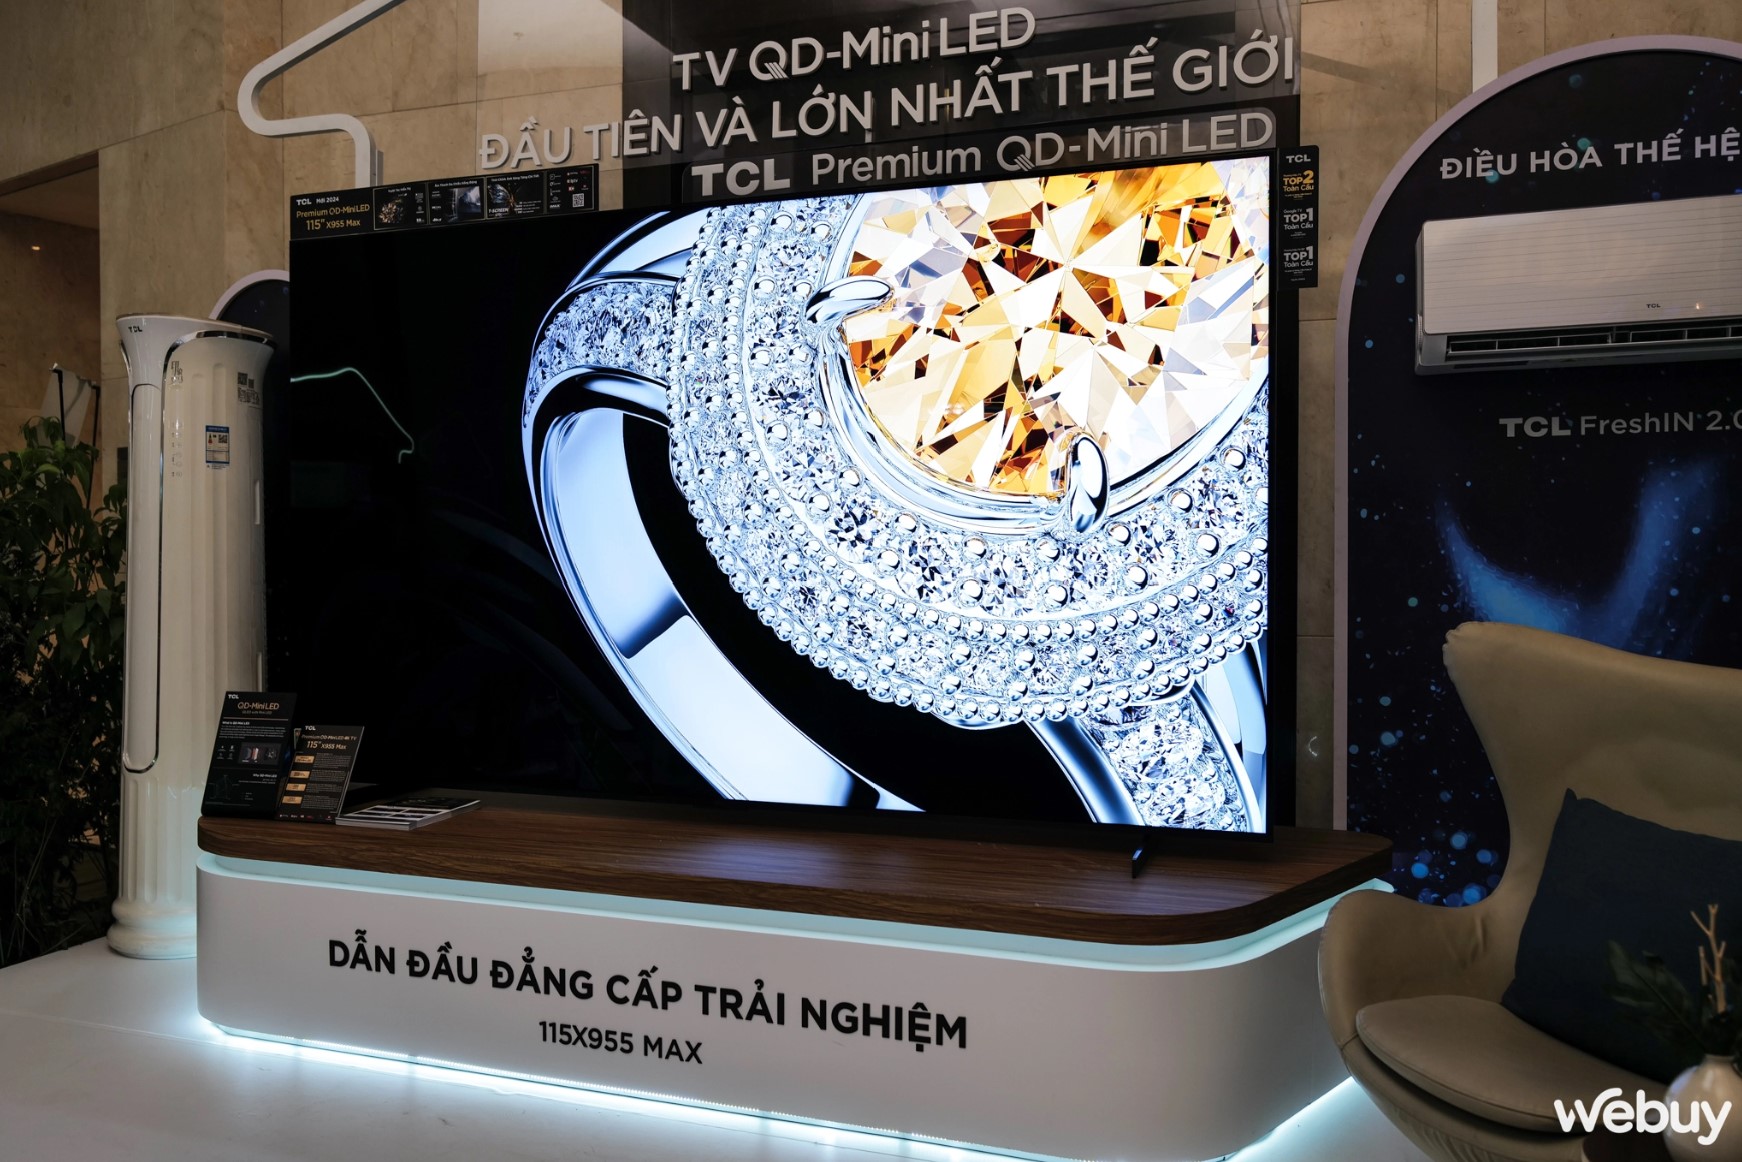 Kế hoạch đằng sau việc TCL quyết định mang TV QD-Mini LED 115 inch lớn nhất thế giới về Việt Nam- Ảnh 1.